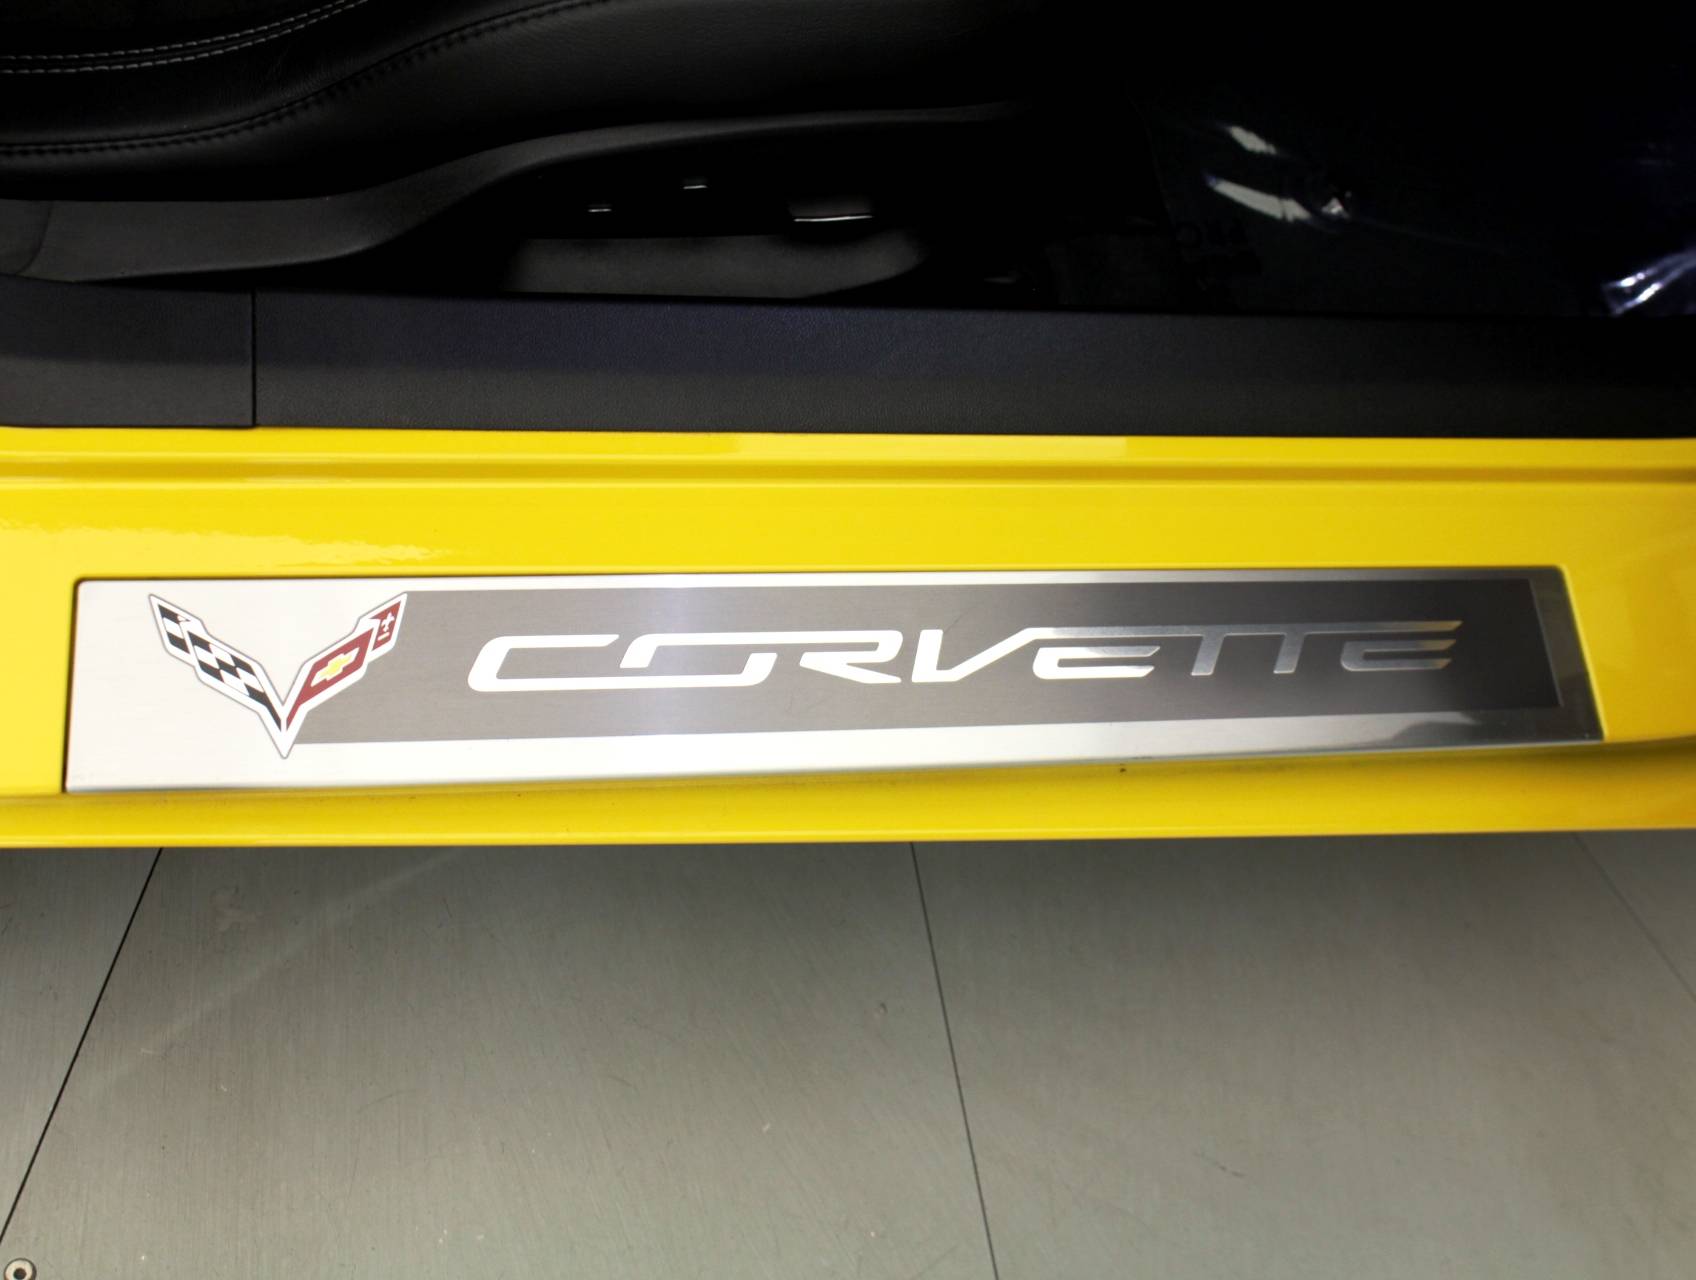 Florida Fine Cars - Used CHEVROLET CORVETTE 2015 MIAMI STINGRAY Z51 3LT